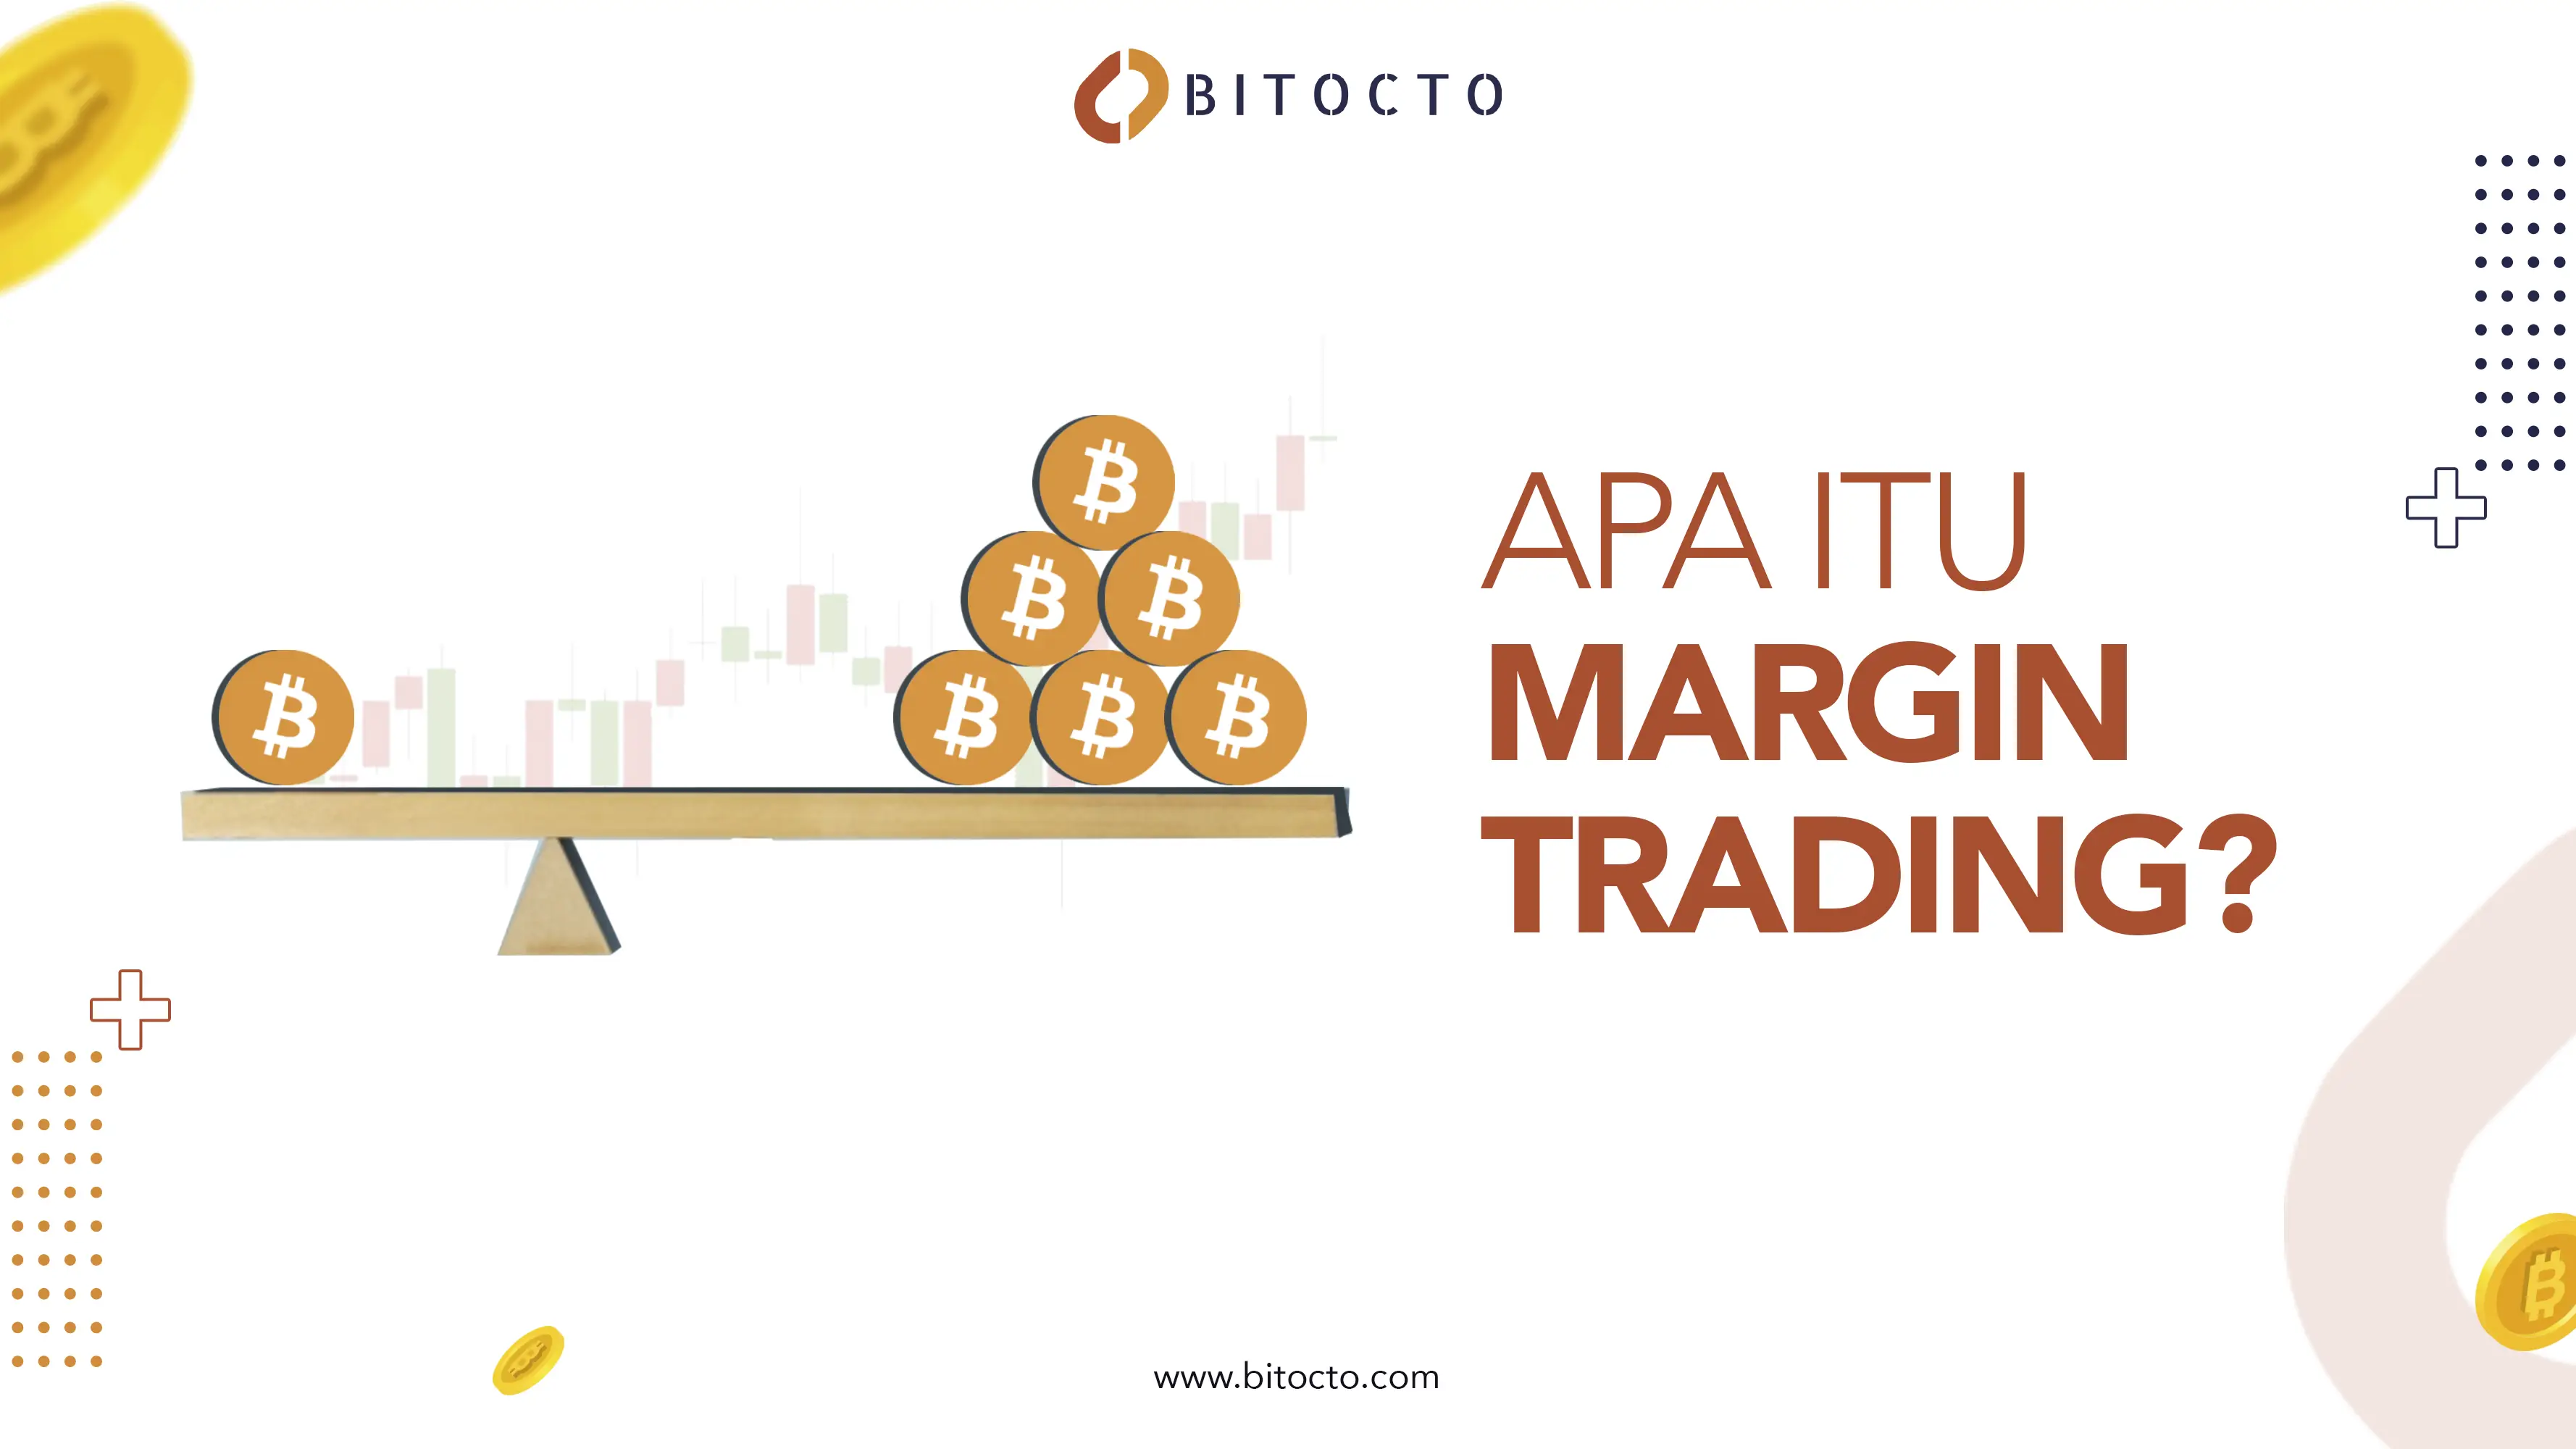 Apa Itu Margin Trading?